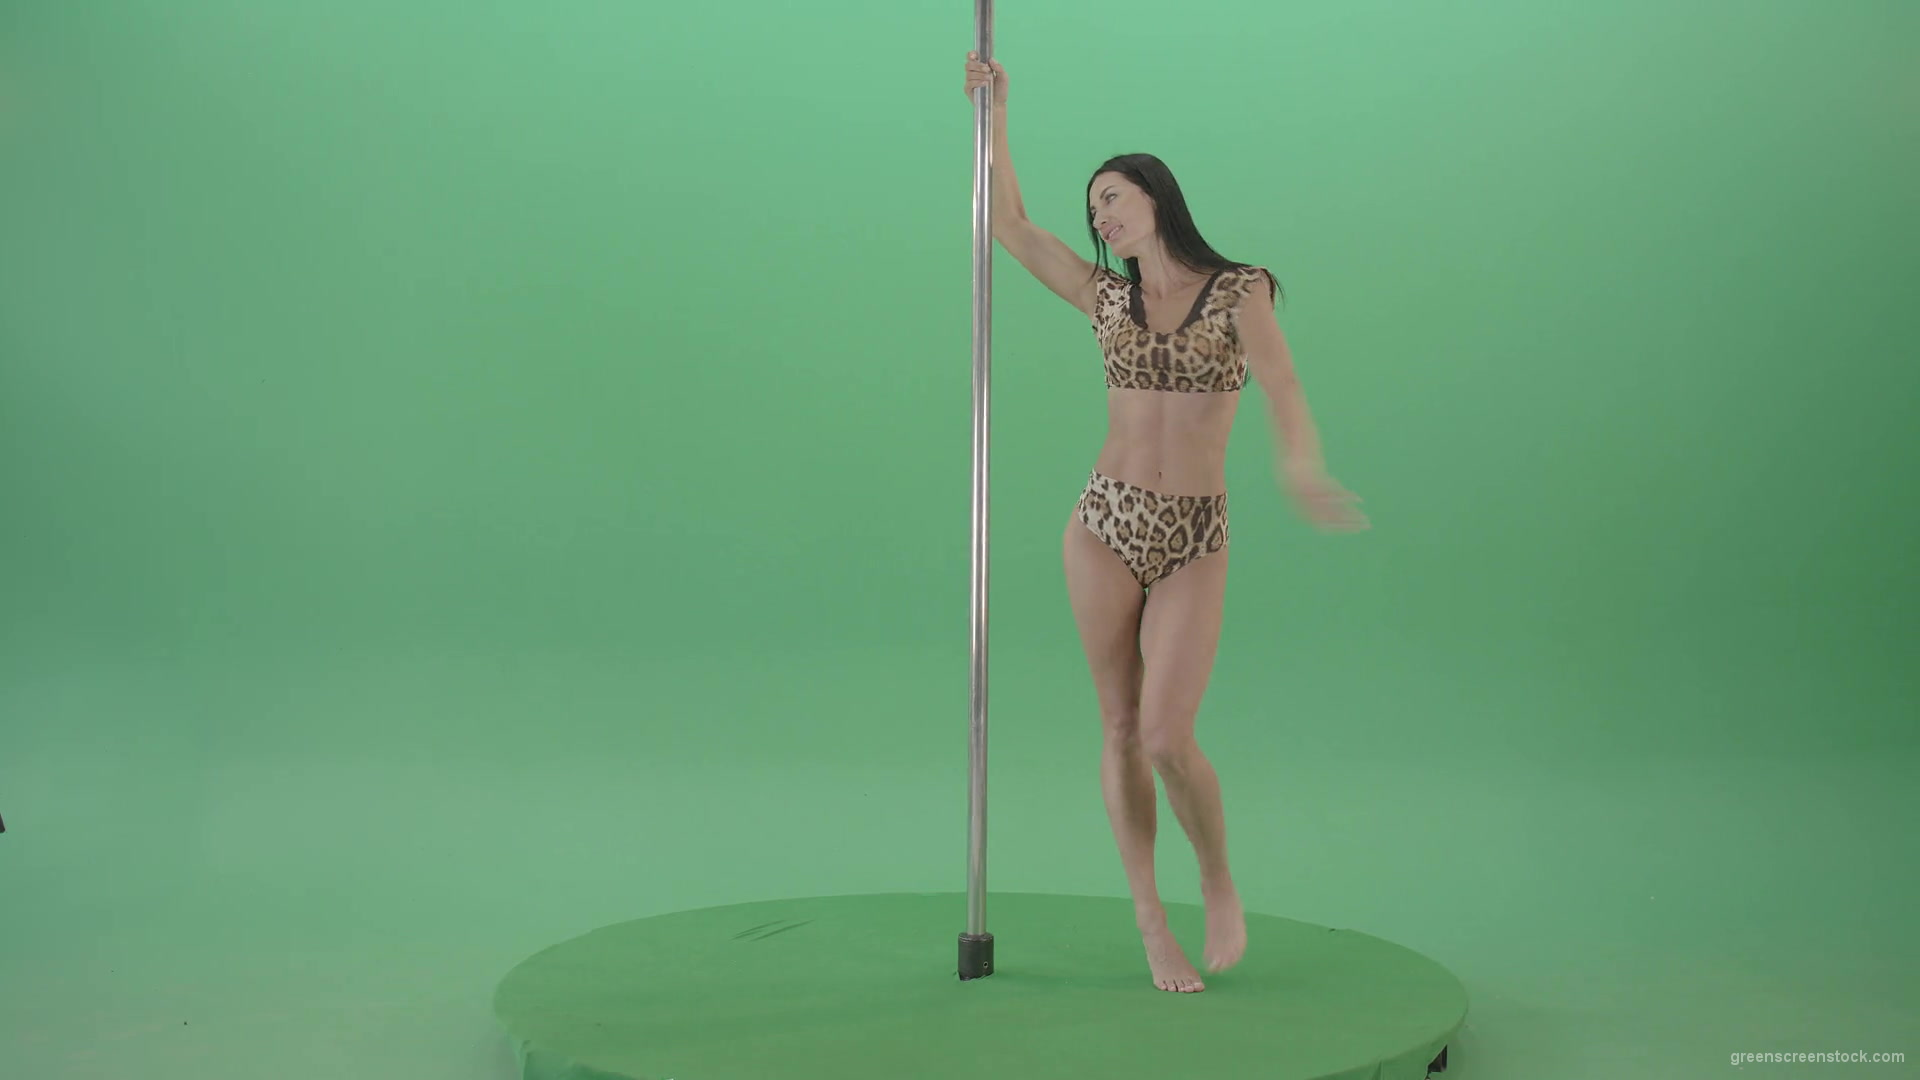 Stripteas-Girl-in-leopard-skin-wear-spinning-on-pilon-dancing-pole-isolated-on-Green-Screen-4K-Video-Footage-1920_002 Green Screen Stock